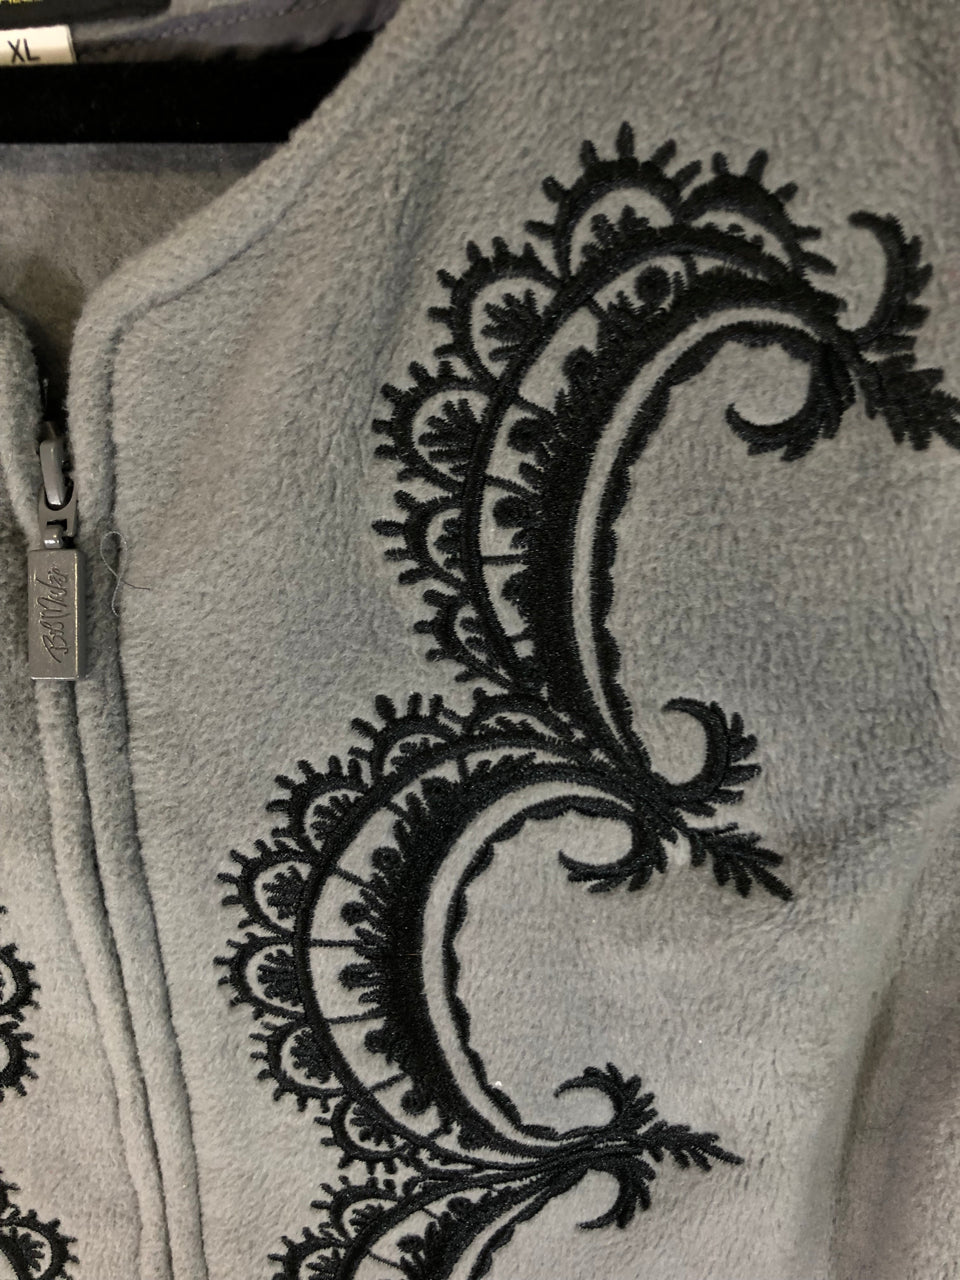 Bob Mackie Embroidered Fleece Zip-Up Vest